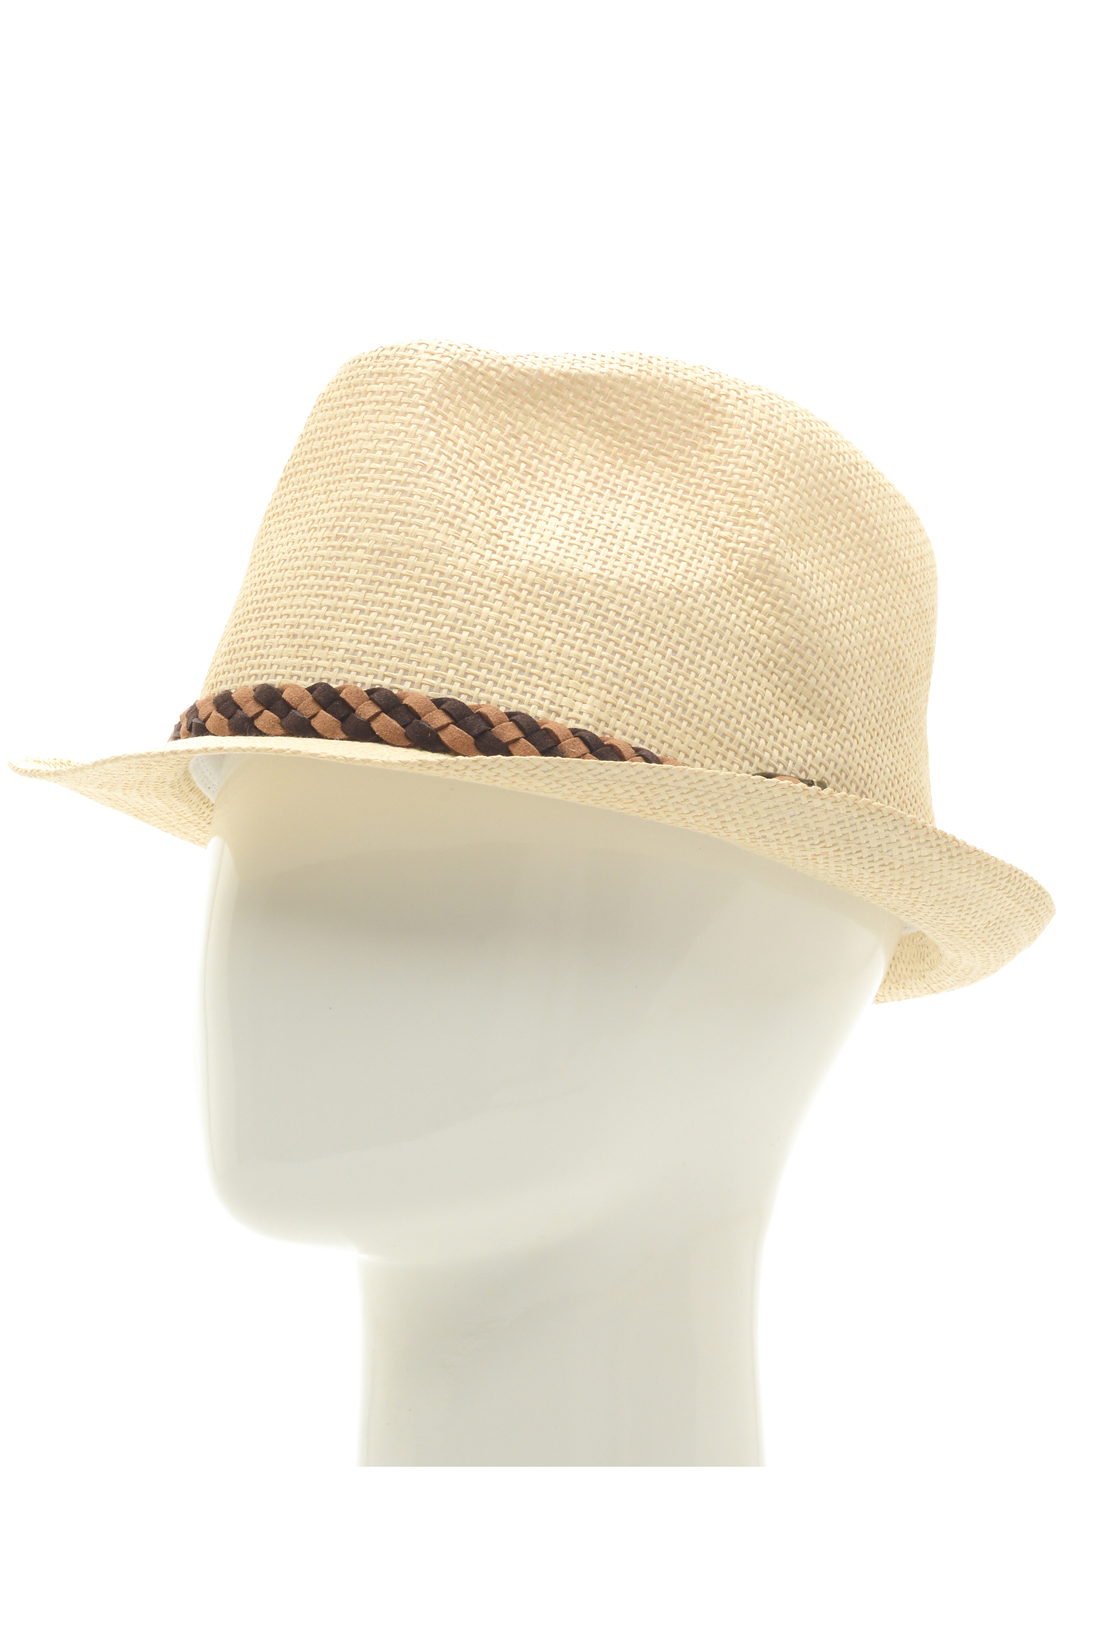 Шляпа с отделкой из кожи (арт. baon B848001), размер Б/р 58, цвет бежевый Шляпа с отделкой из кожи (арт. baon B848001) - фото 1